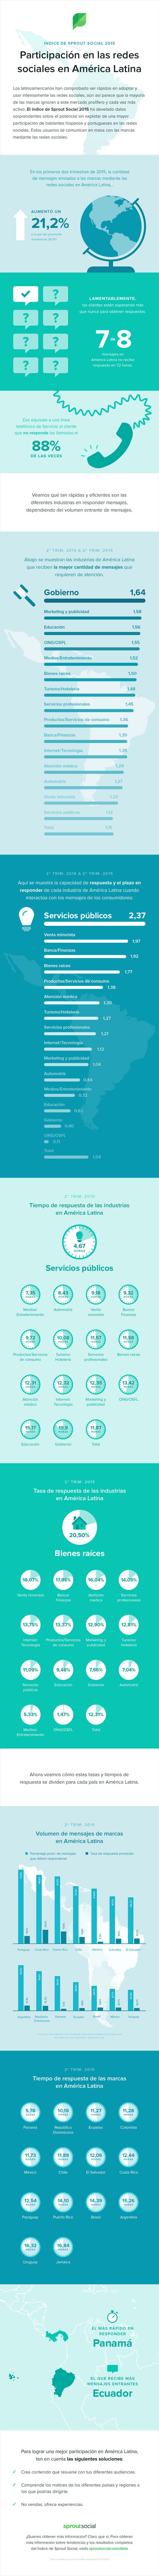 Índice de Sprout Social 2015: Participación en las redes sociales en América Latina